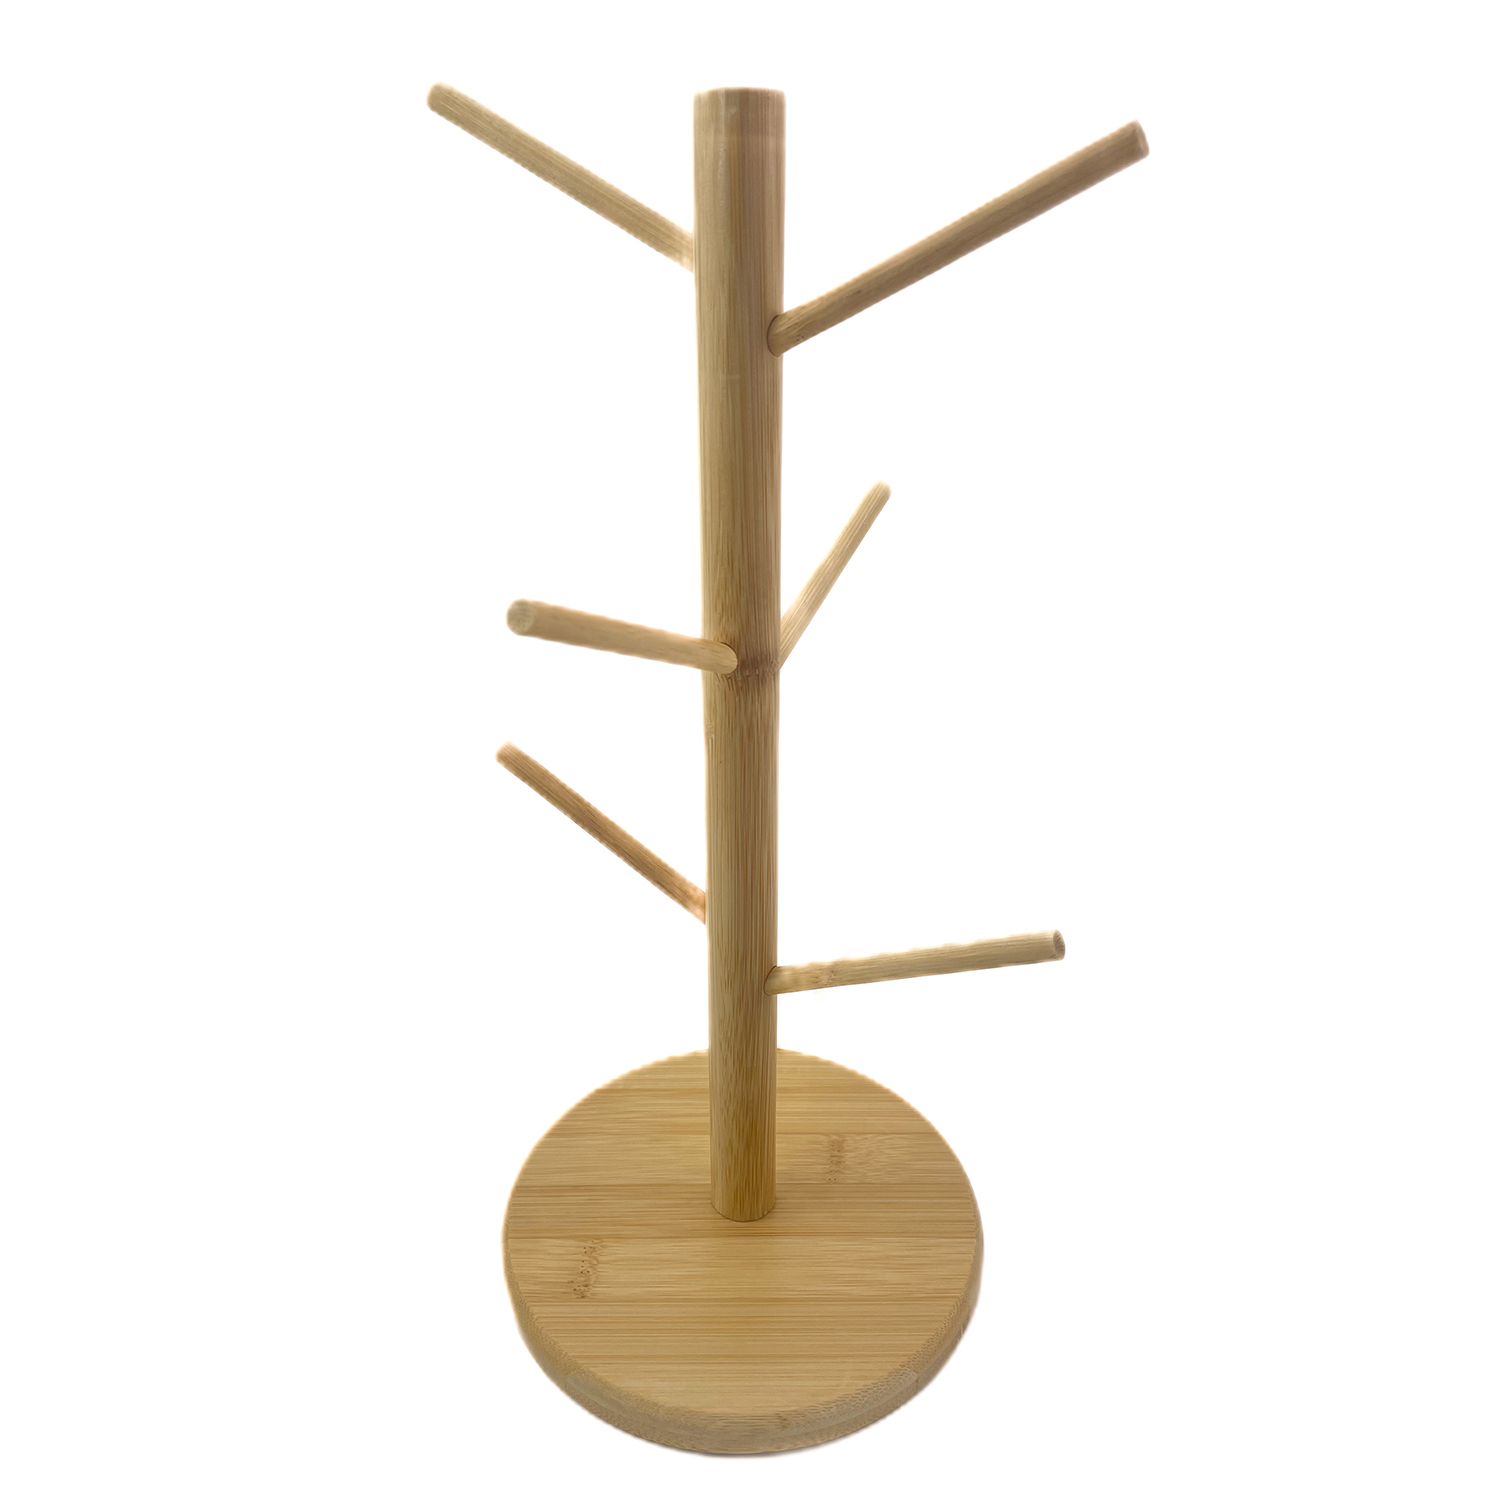 Estante organizador de tazas de bambú, soporte de árbol para tazas, estante de almacenaje para cocina, estante organizador de tazas en forma de árbol, estante para tazas para té y café de bambú